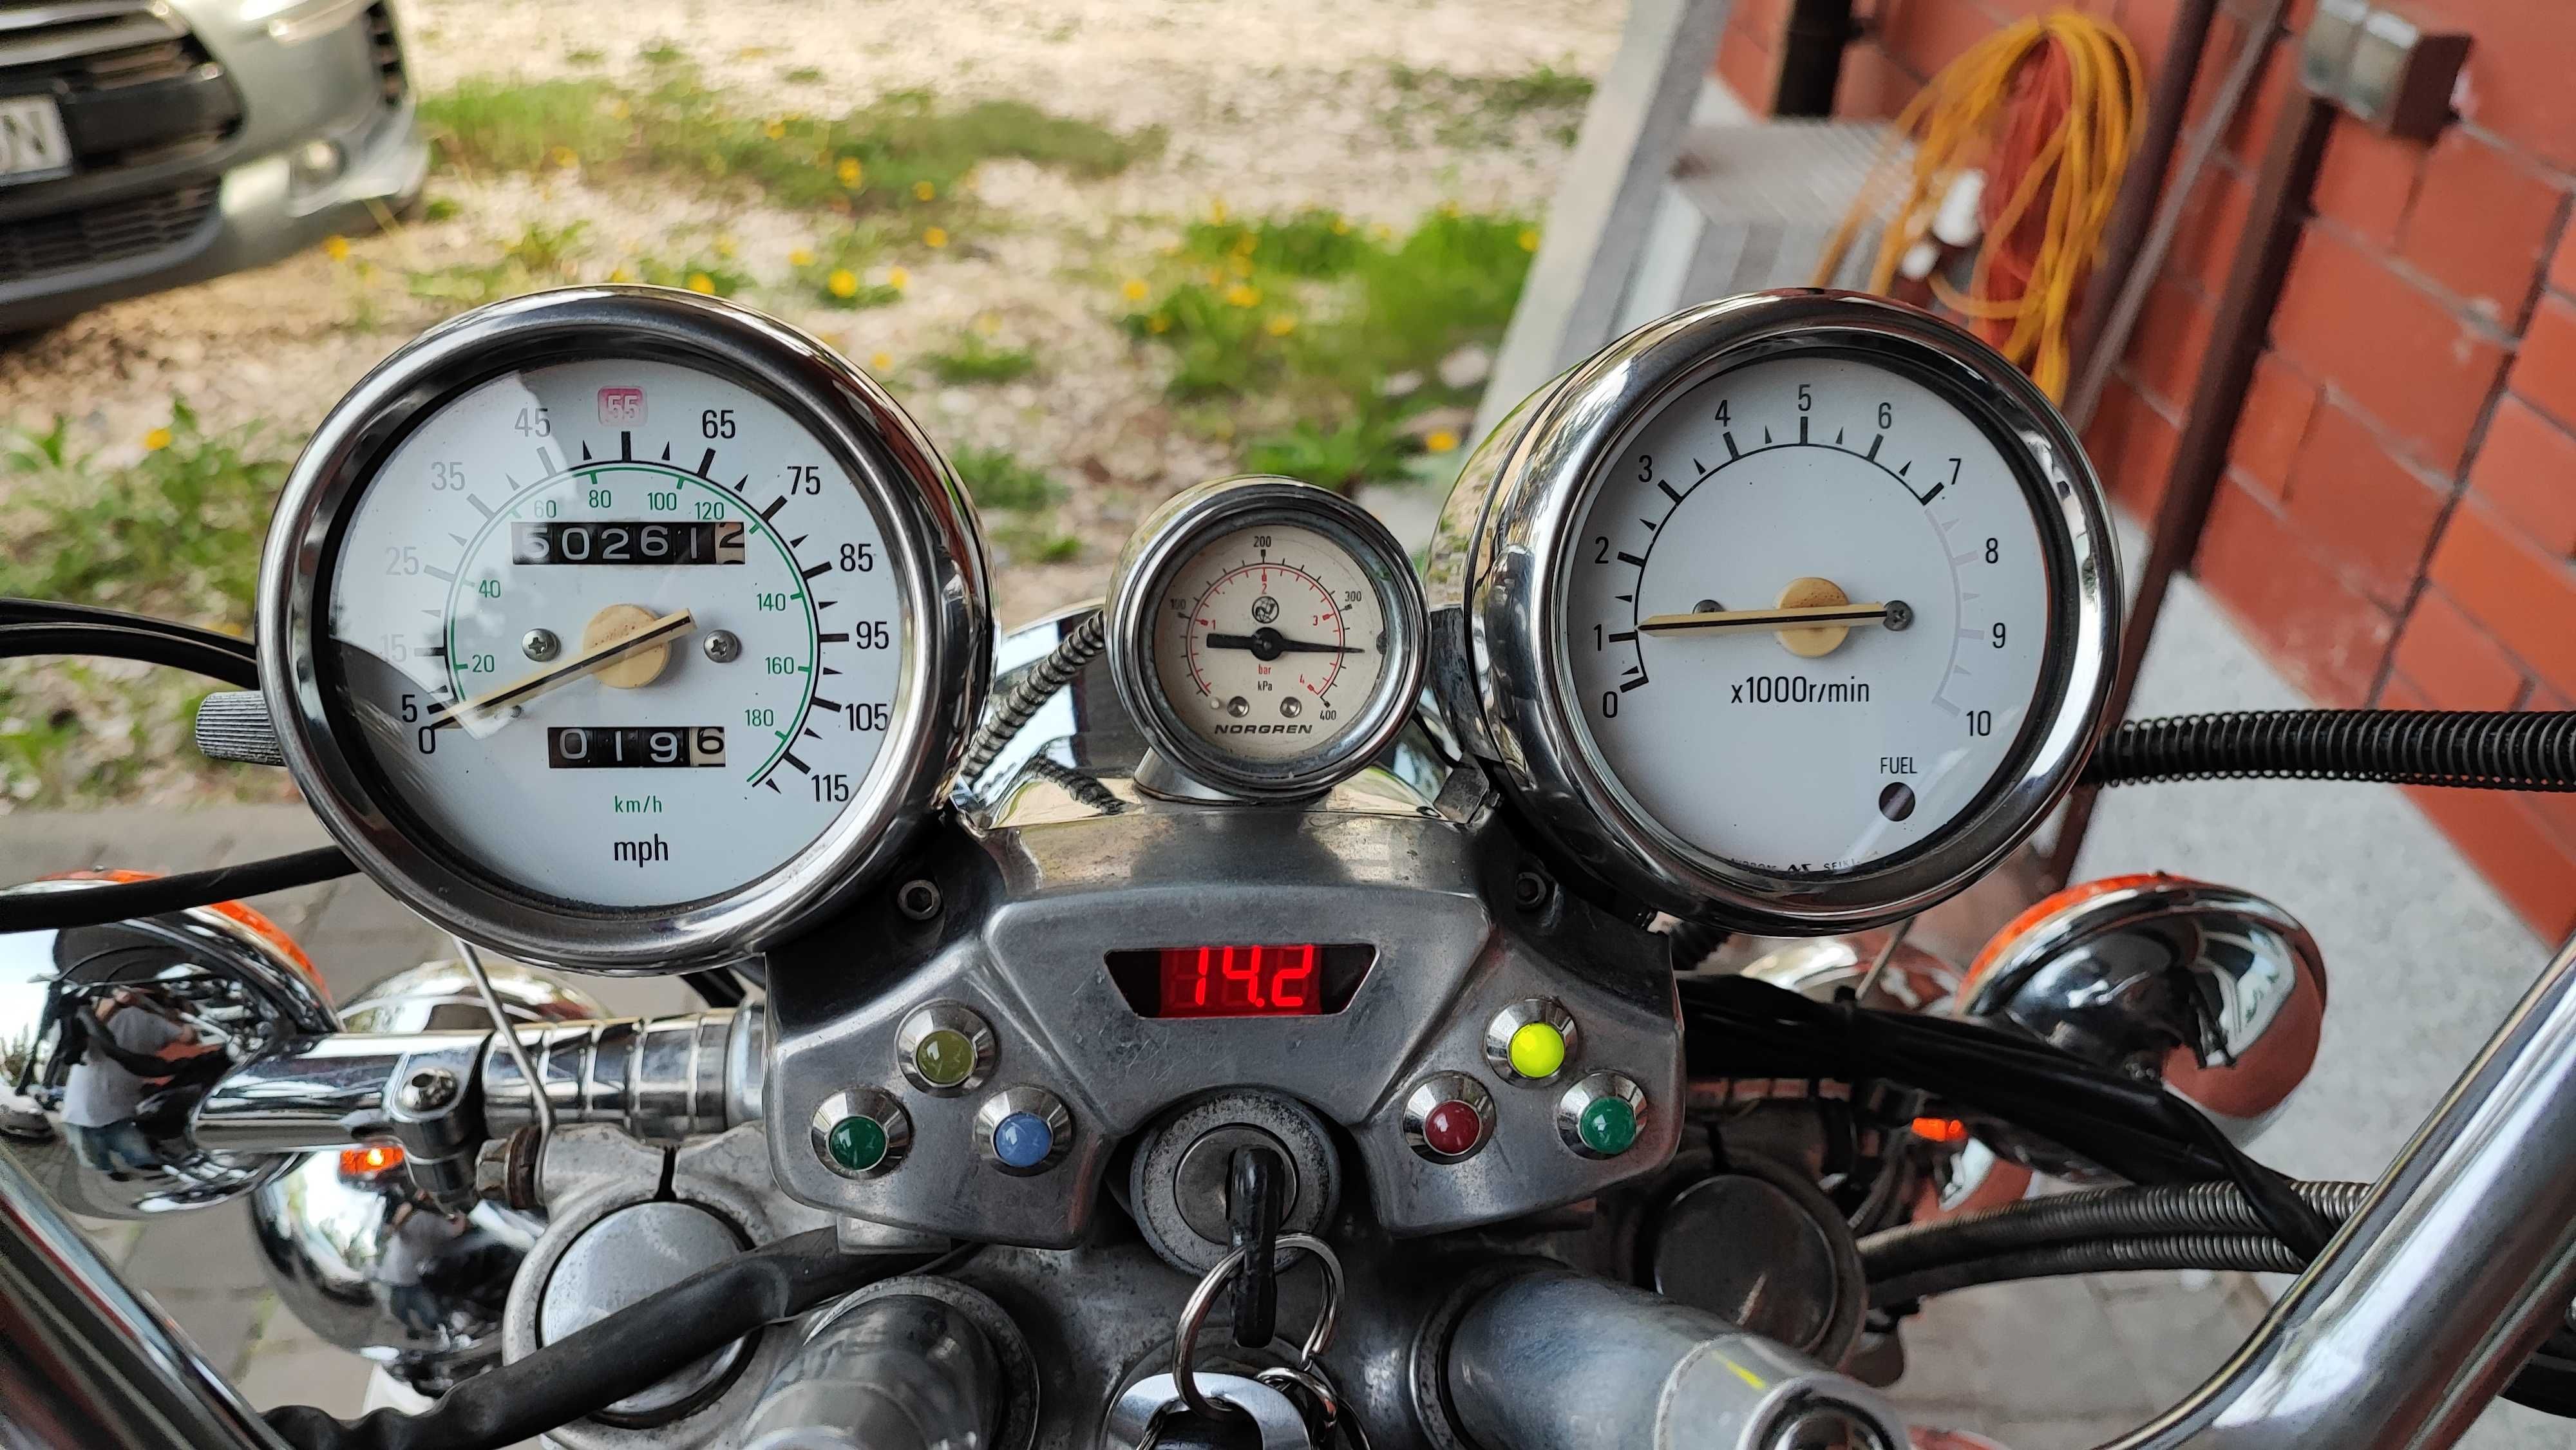 Motocykl Yamaha Virago XV750